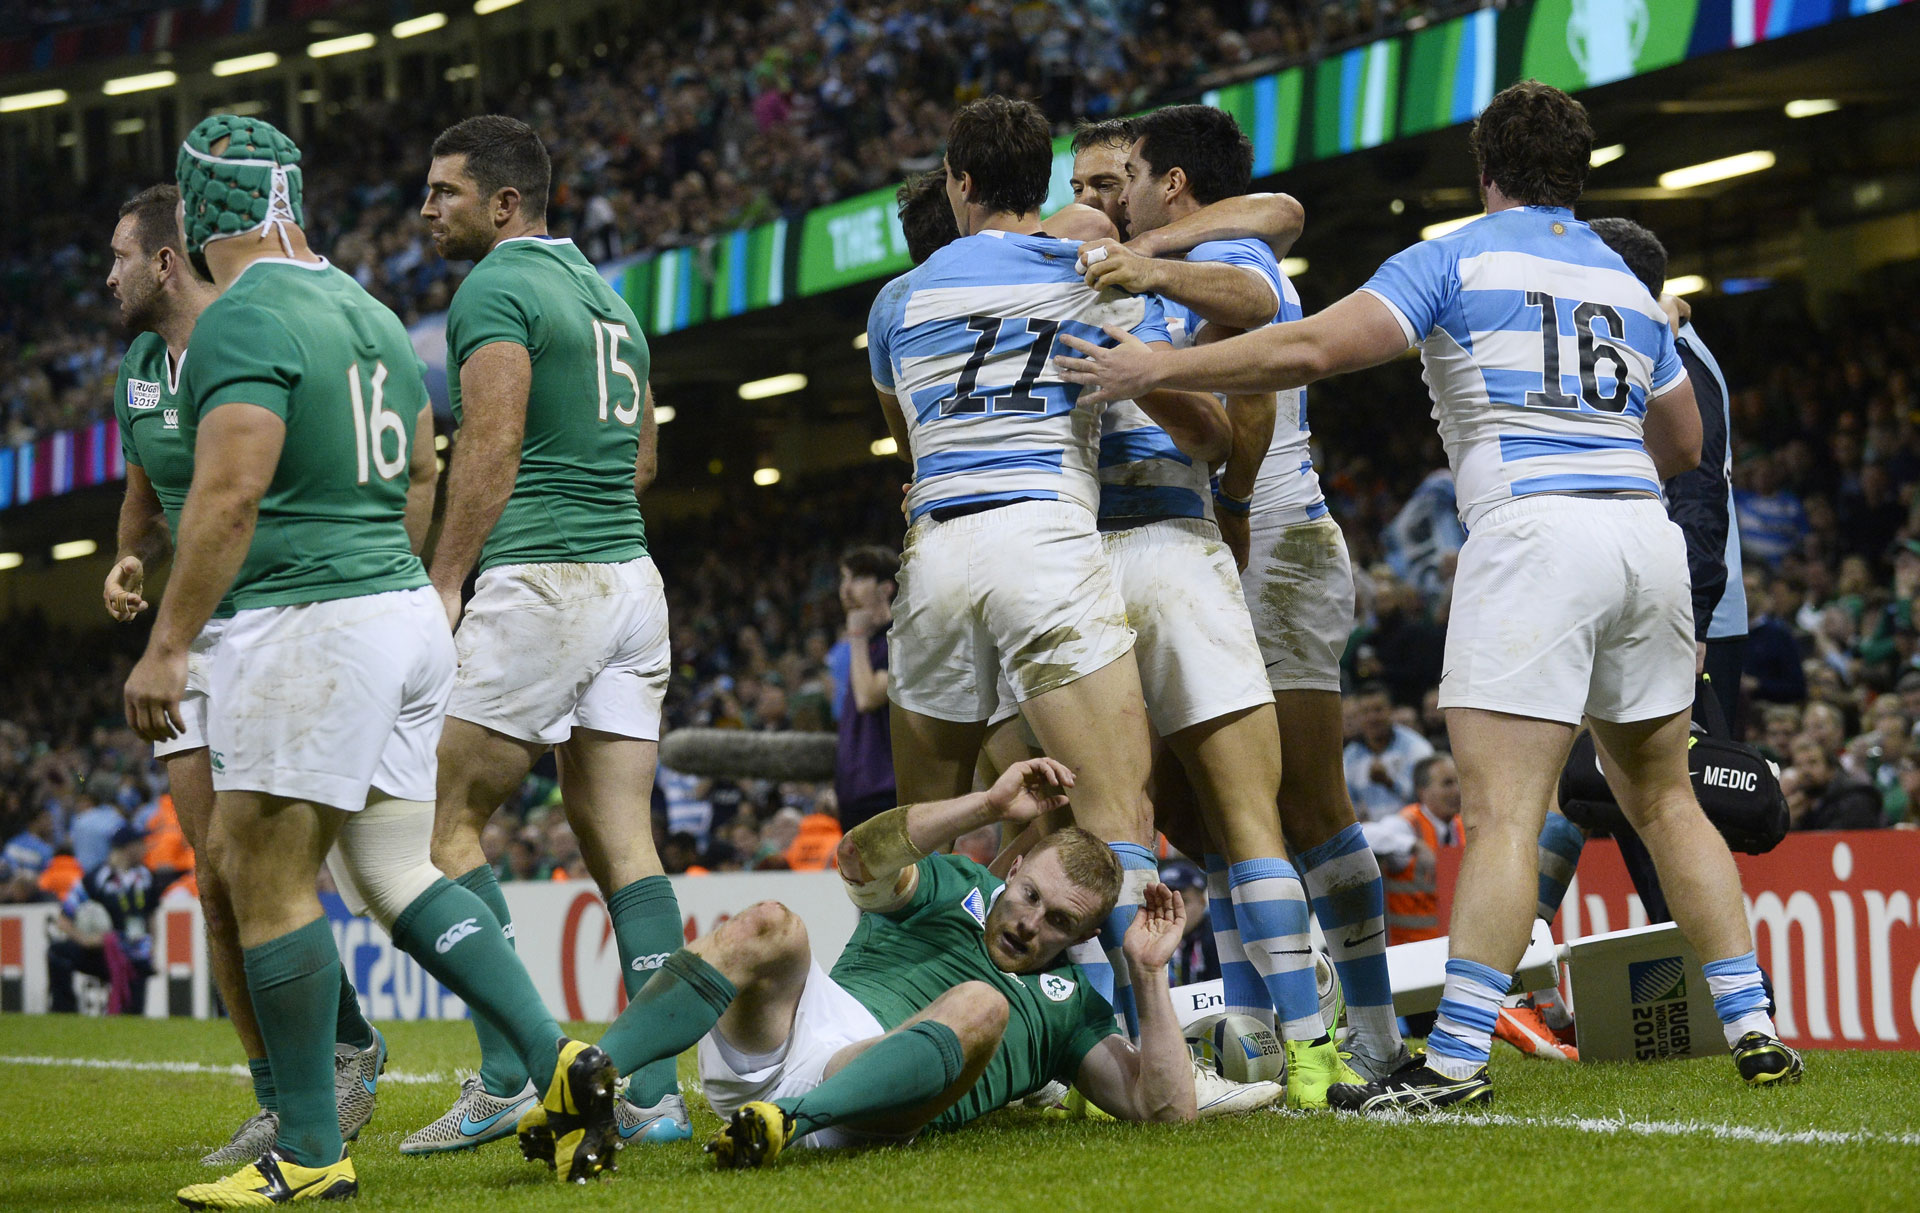 Mundial de Rugby: Pumas argentinos ganan a Irlanda y alcanzan segundas de su historia - LaPatilla.com